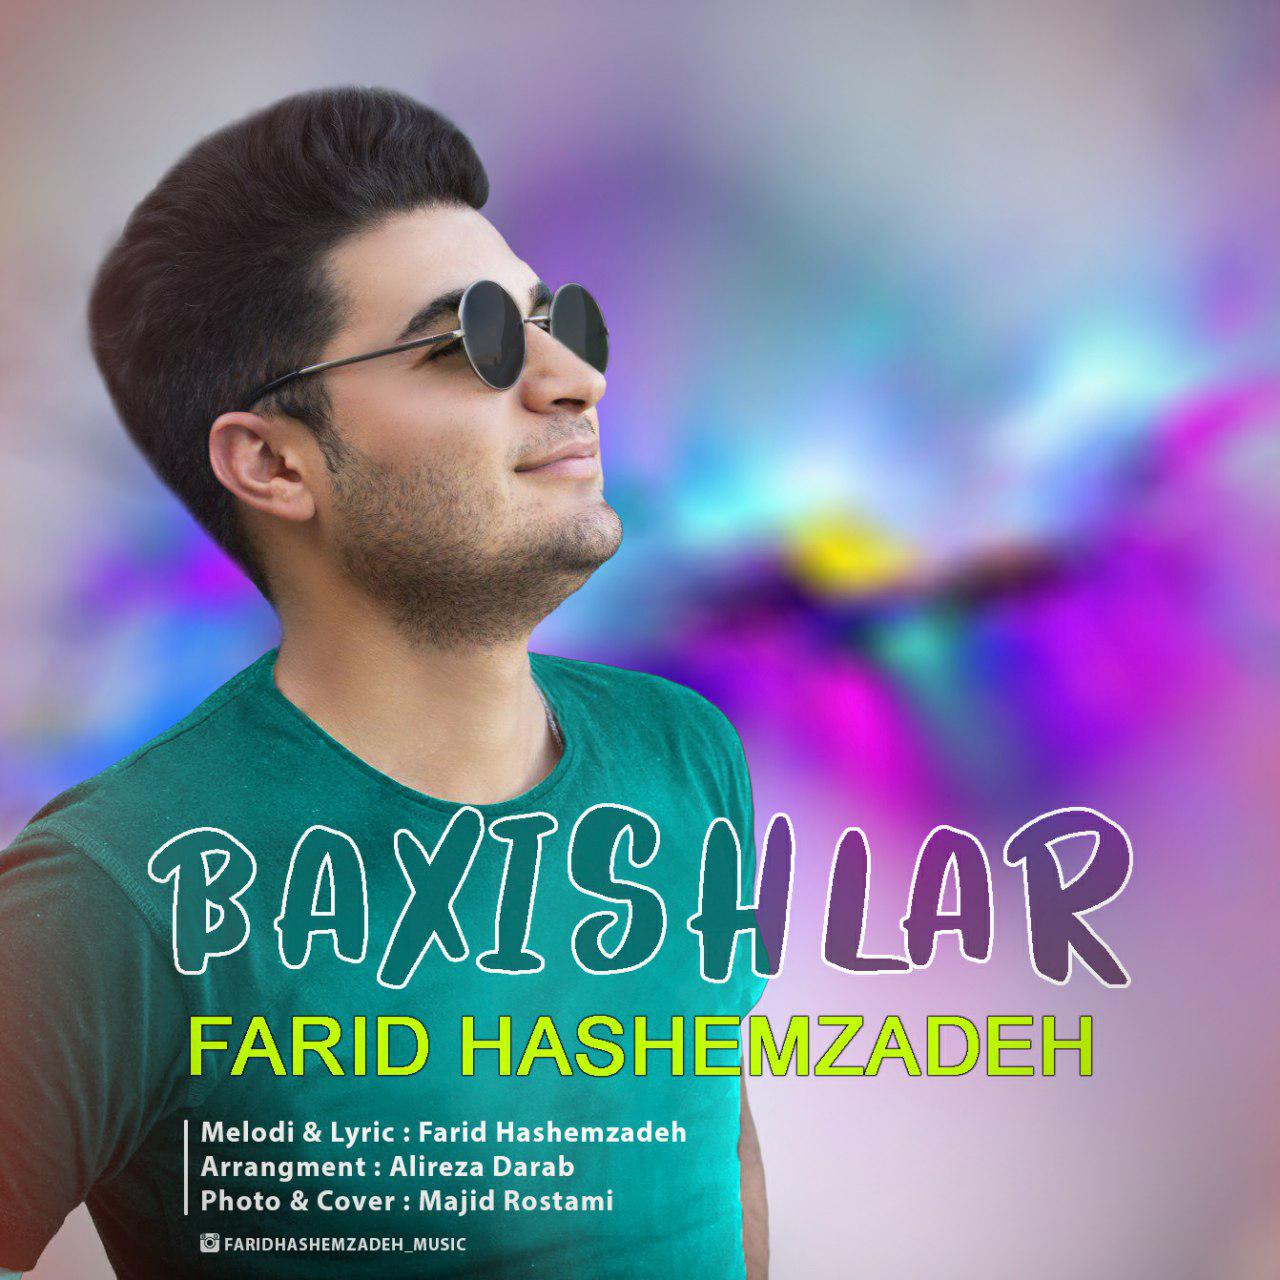  دانلود آهنگ جدید فرید هاشم زاده - باخیشلار | Download New Music By Farid Hashemzadeh - Baxishlar